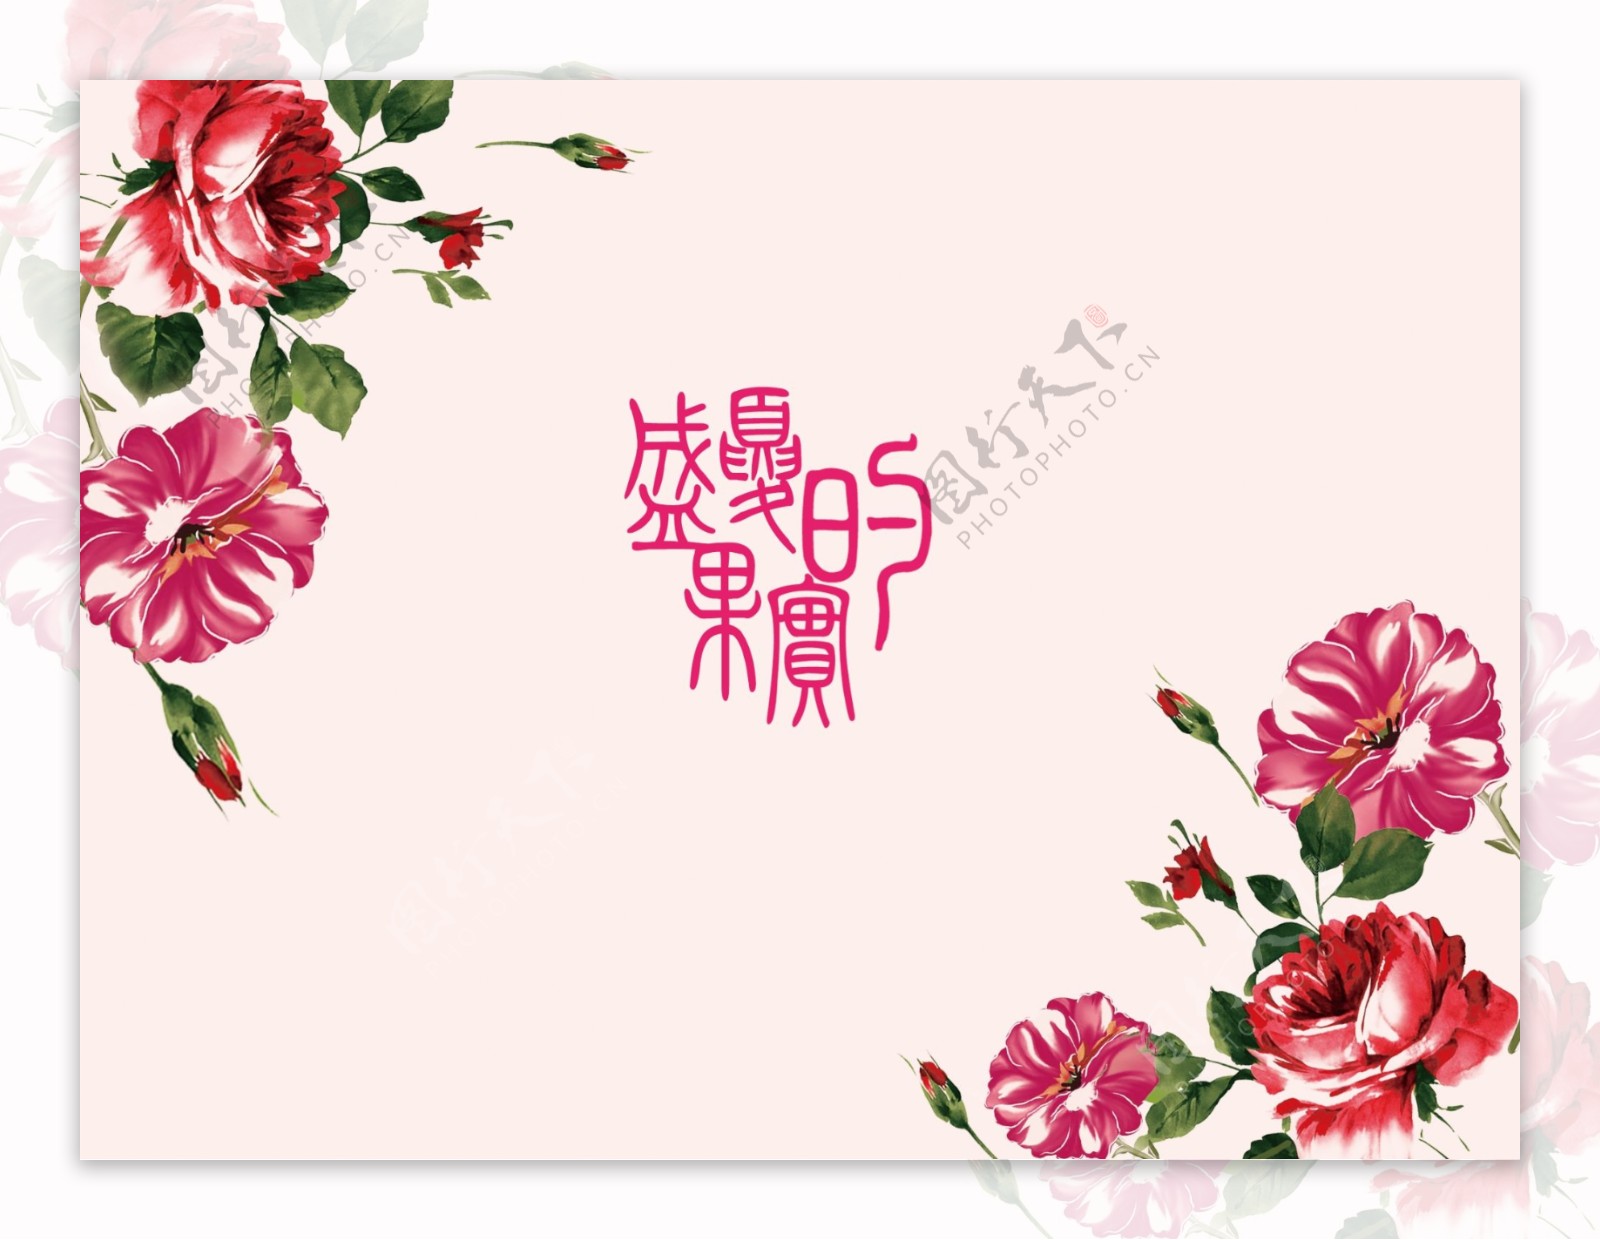 婚庆主题logo设计图片